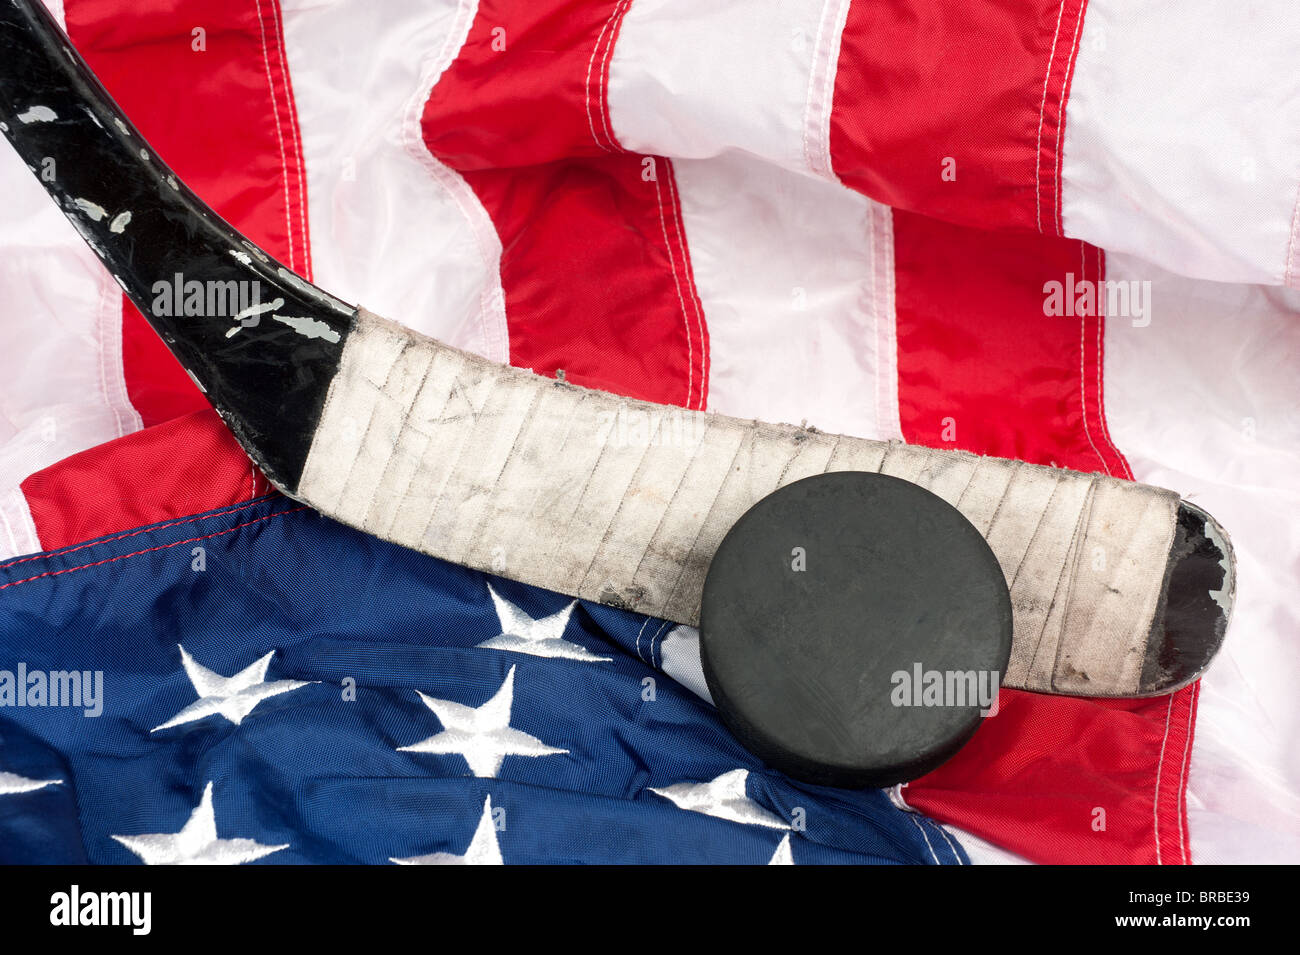 Hockey apparecchiature tra cui un bastone e puck su una bandiera americana per dedurre una patriottica sport americano. Foto Stock